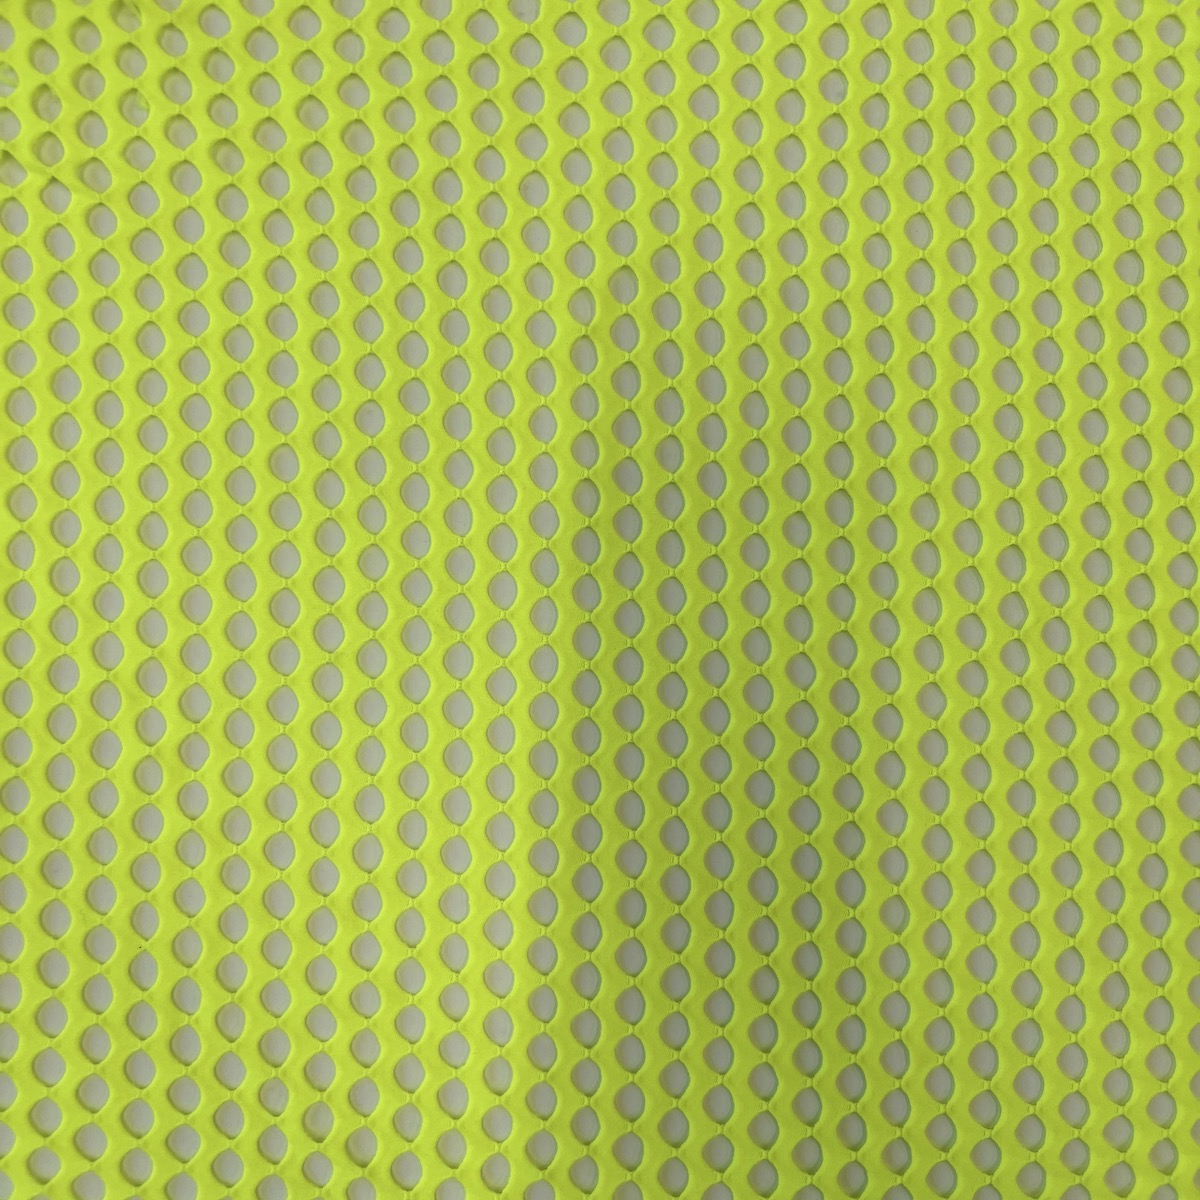 Neon Yellow Crochet Fishnet Netting Spandex Fabric